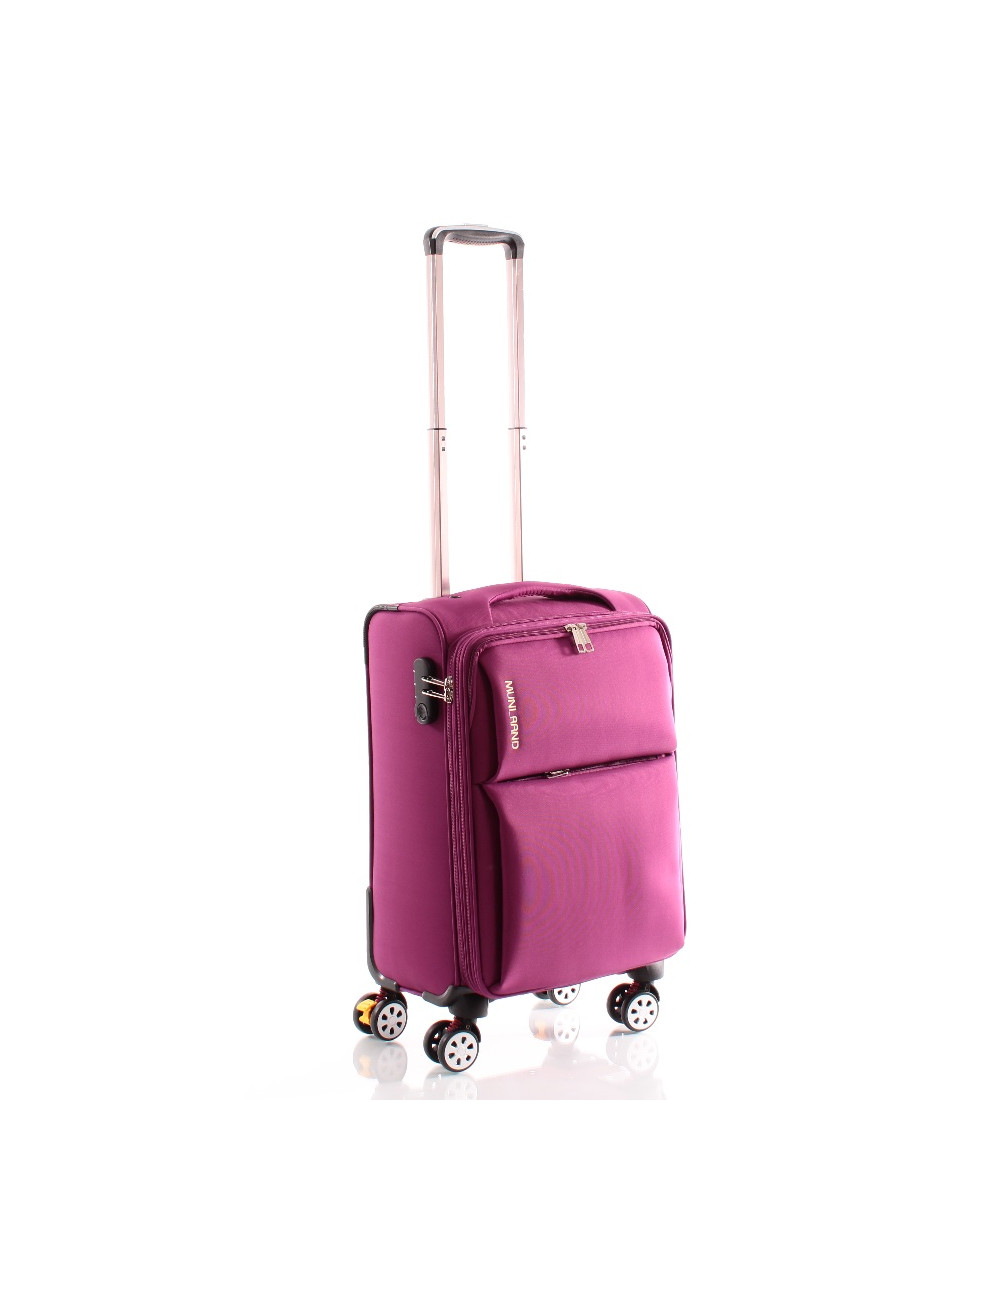 ROULETTES pour valise:DELSEY Air France destination 4 roues